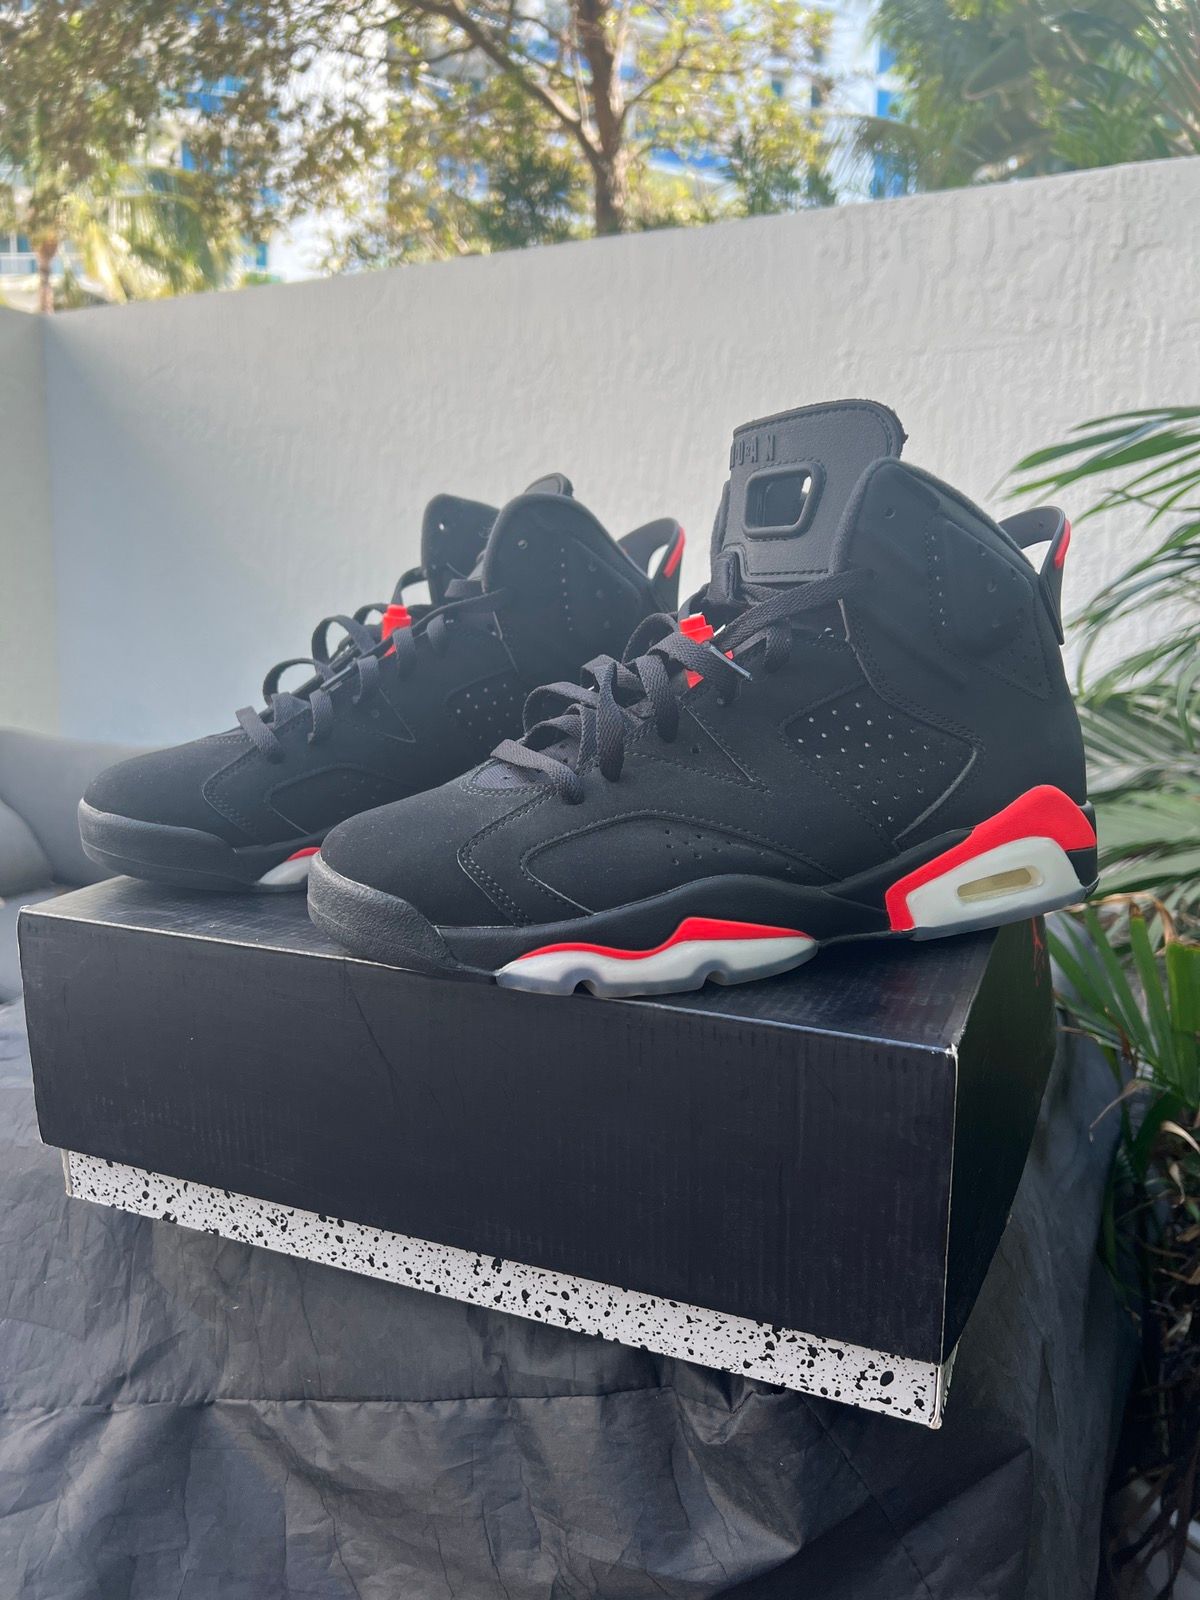 Pre-owned Jordan Nike Air Jordan Og Infd 6 2019 Shoes In Infrared Black